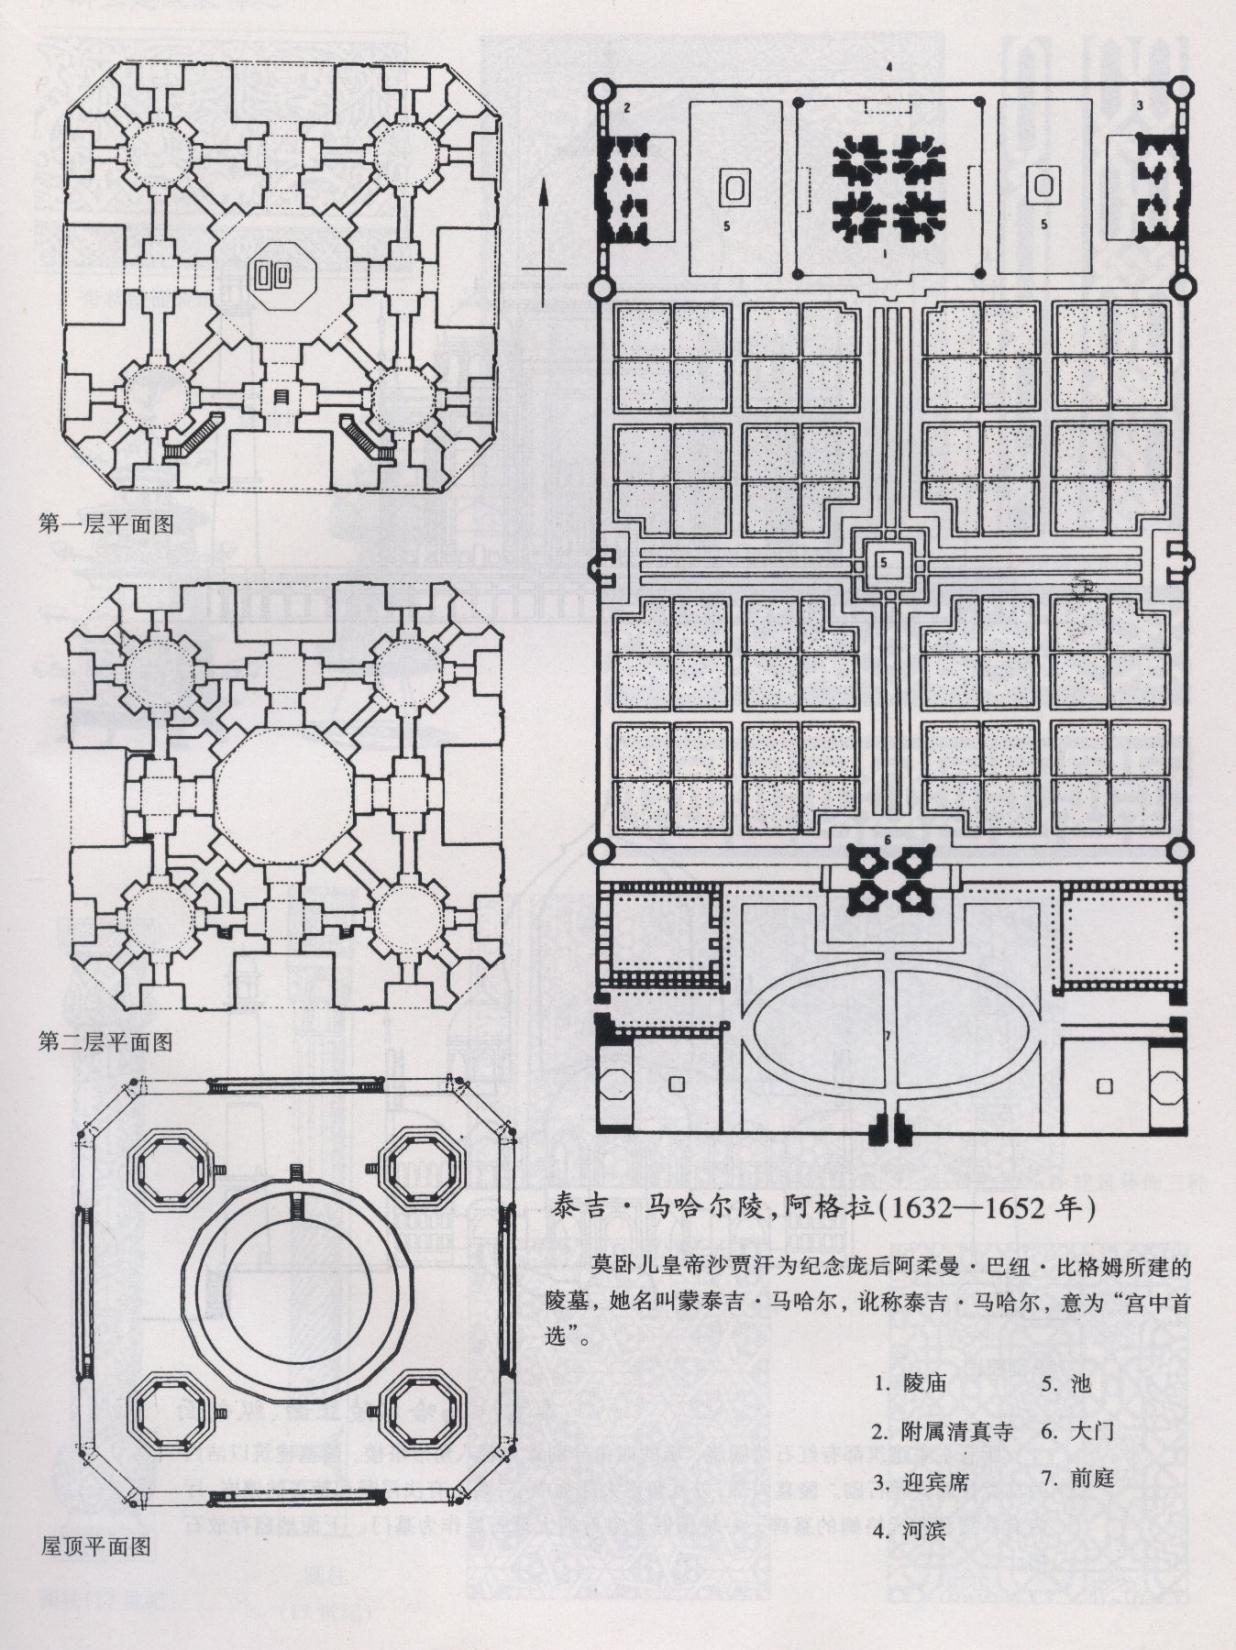 泰姬玛哈尔陵的结构图片